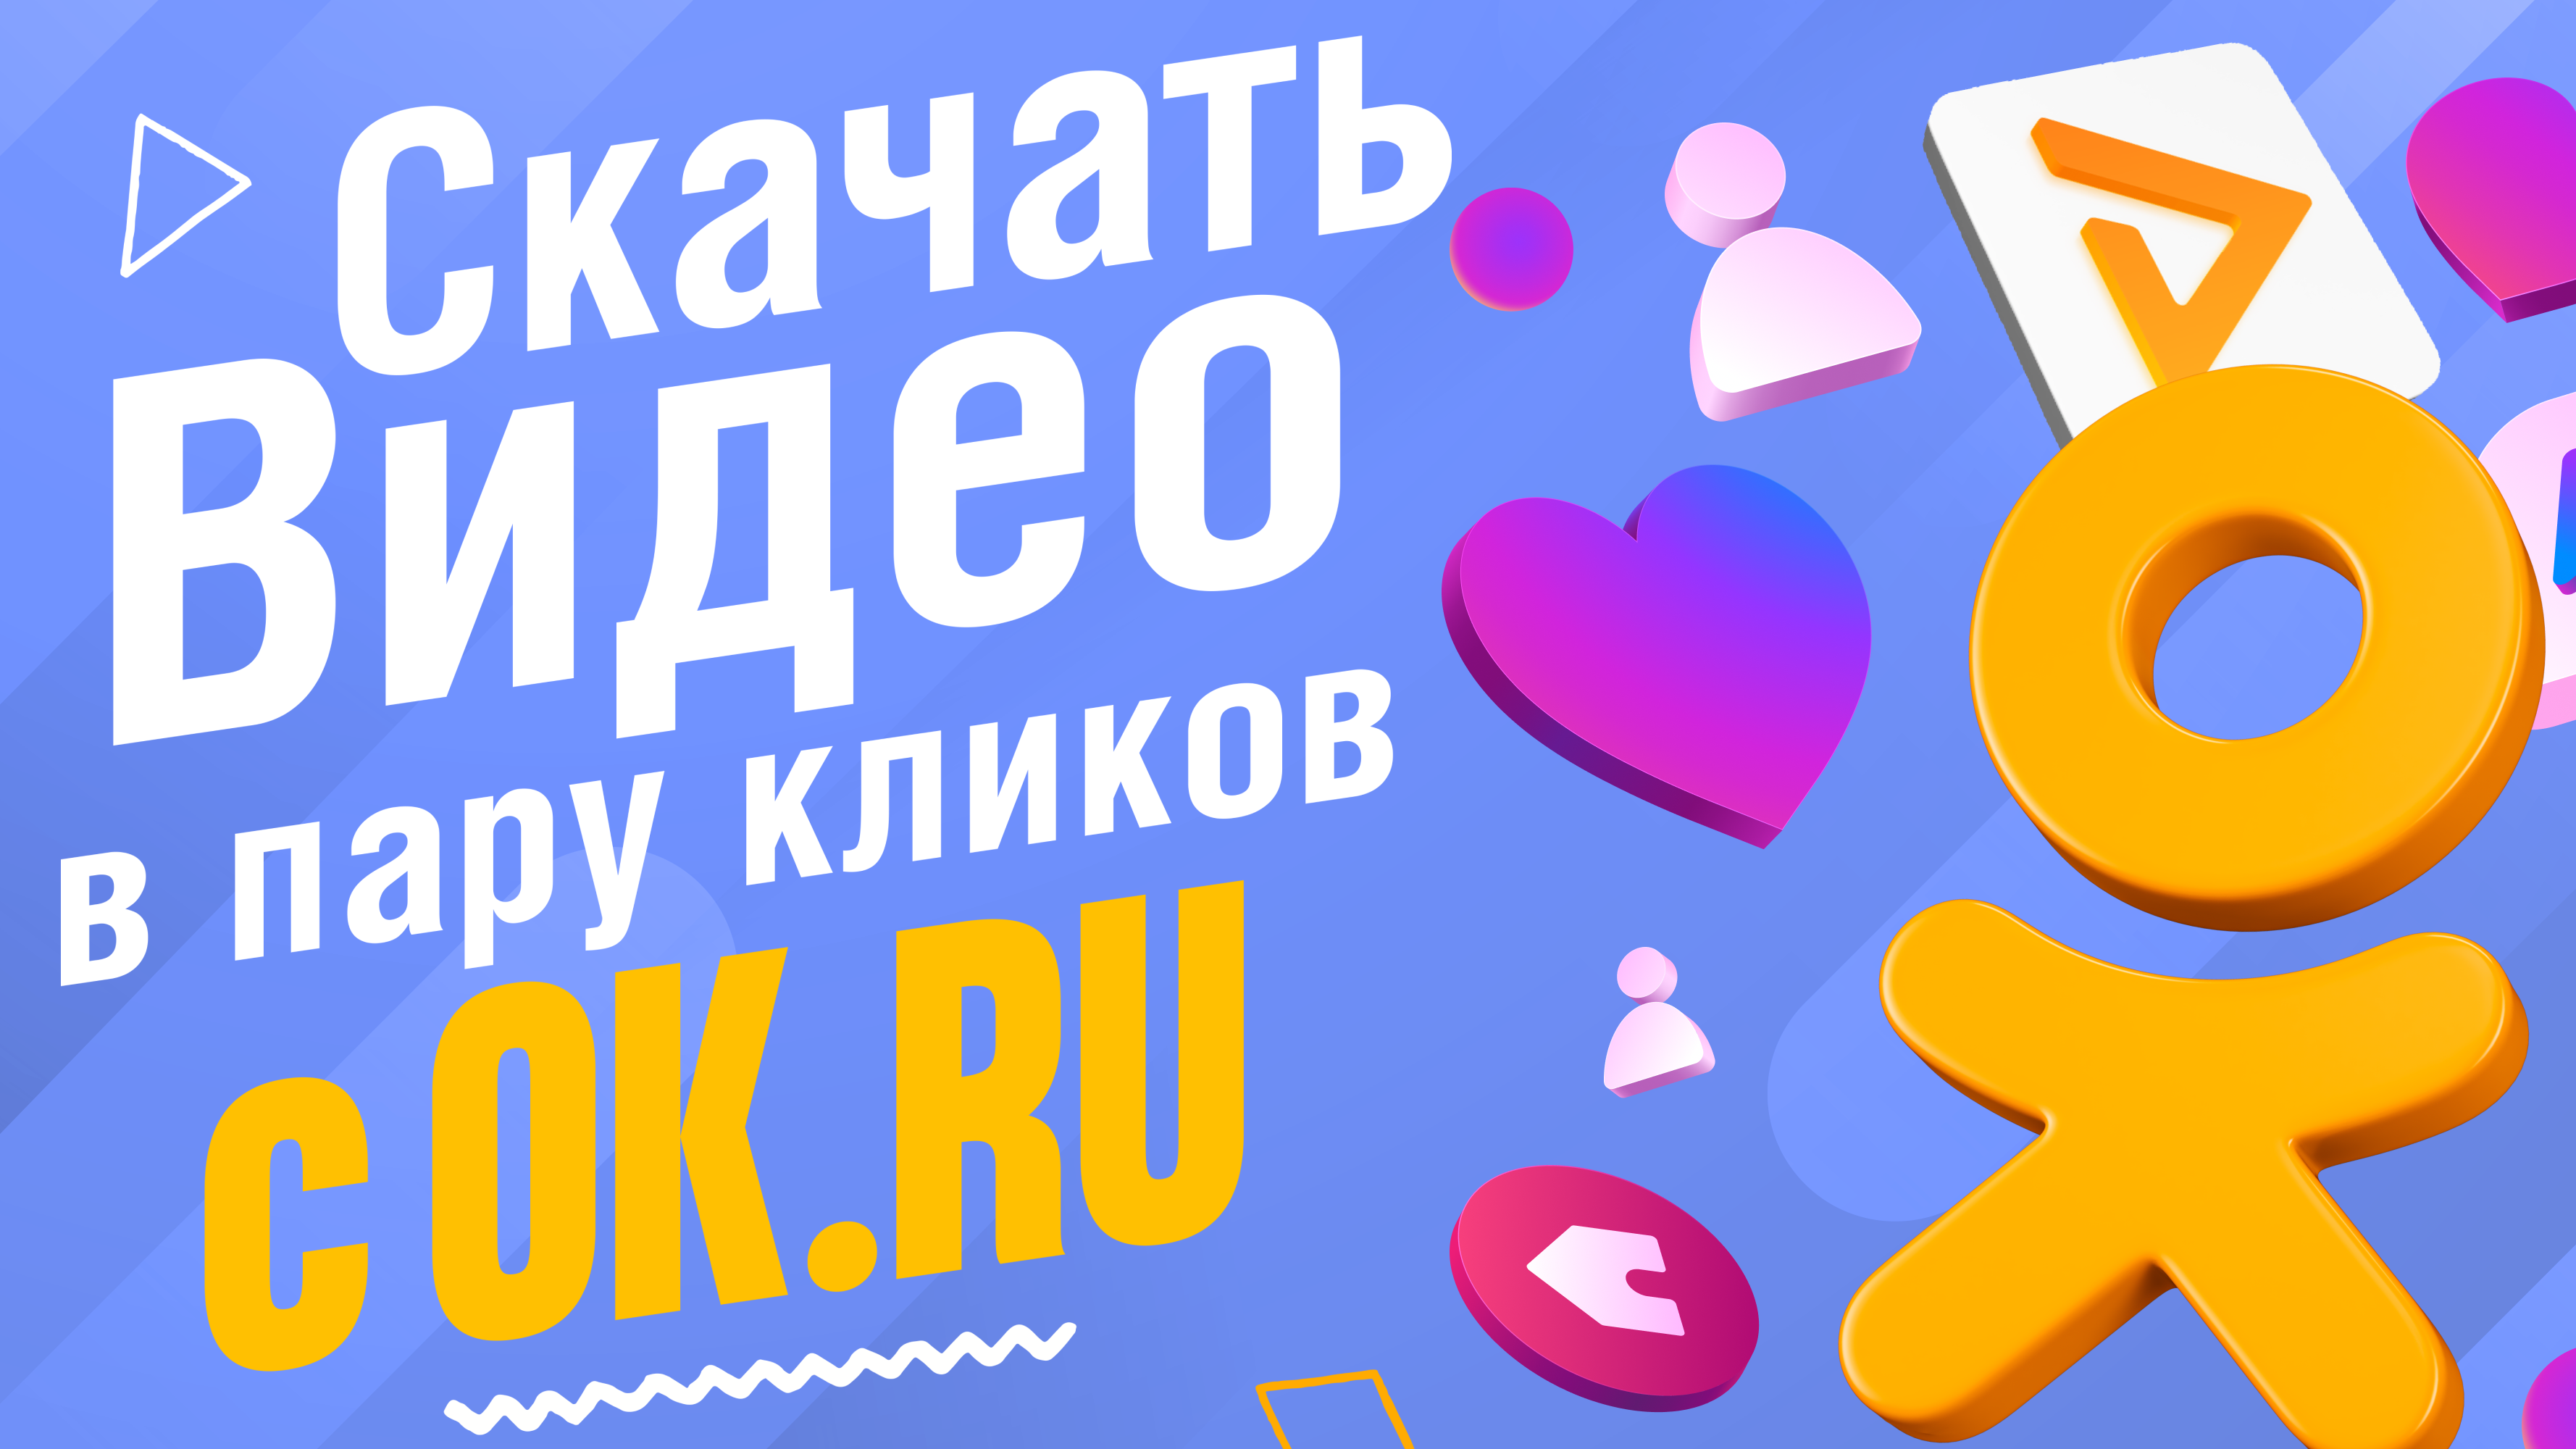 Как скачать с Одноклассников (ok.ru) через браузерное расширение